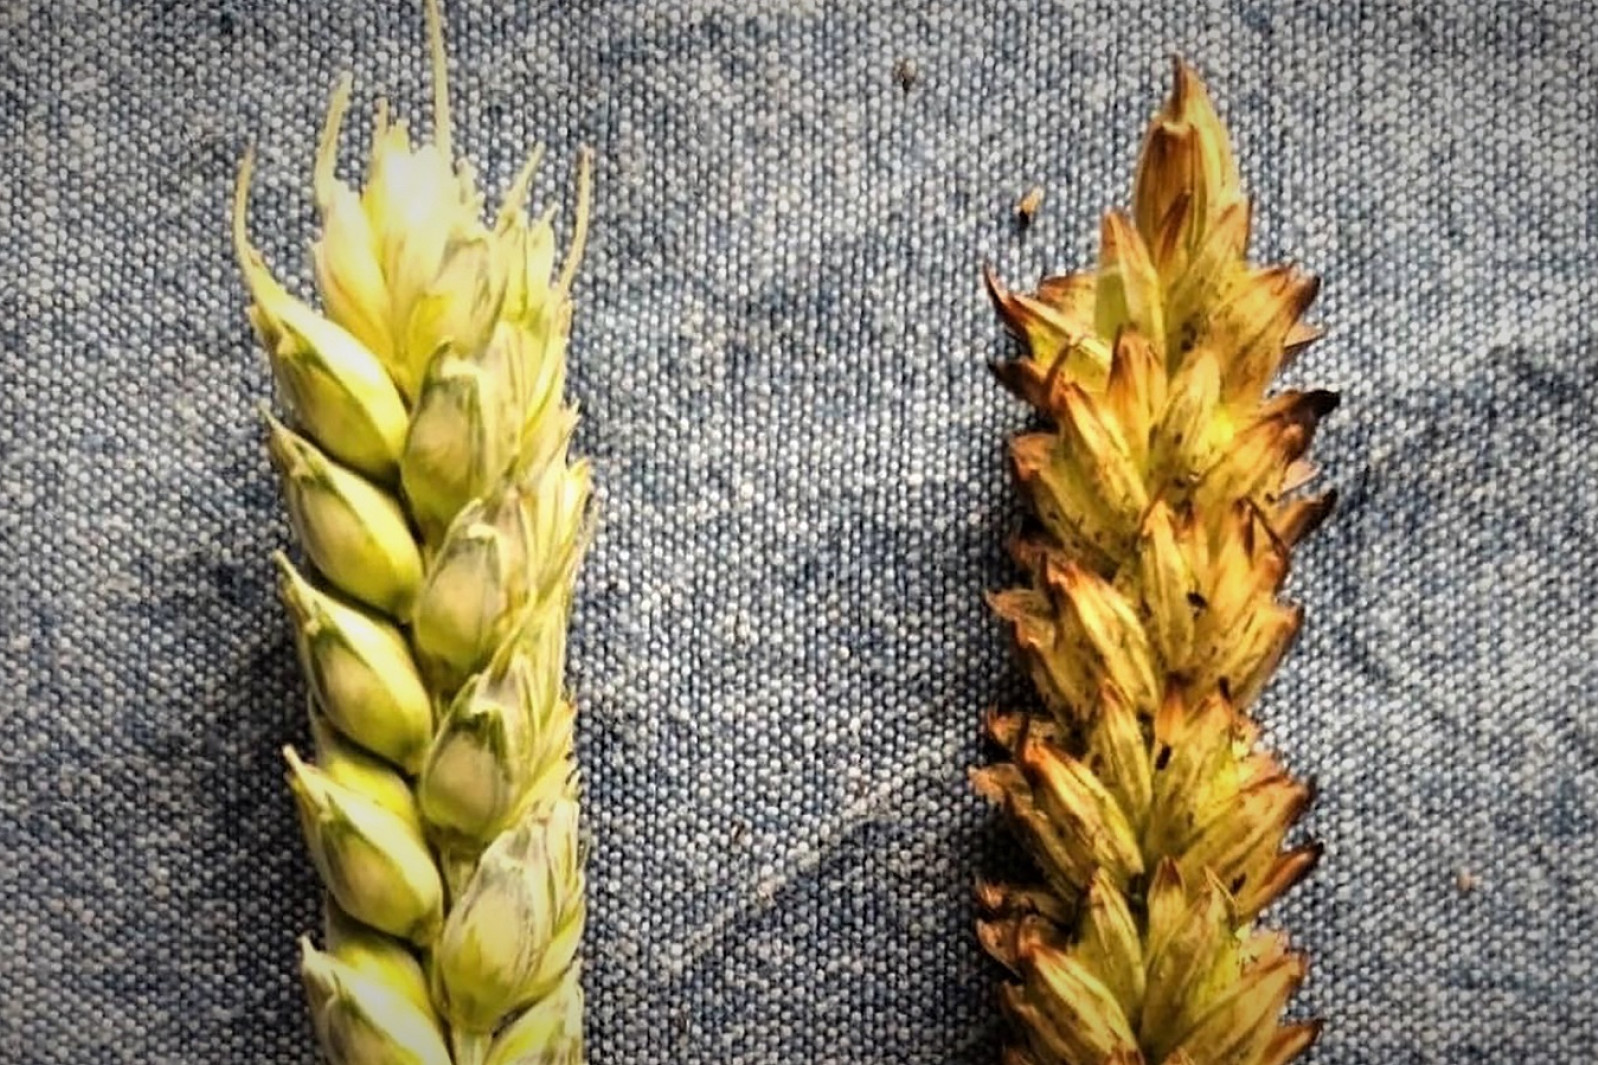 Nærbillede af korn, hvoraf det ene er før afbrænding og det andet efter